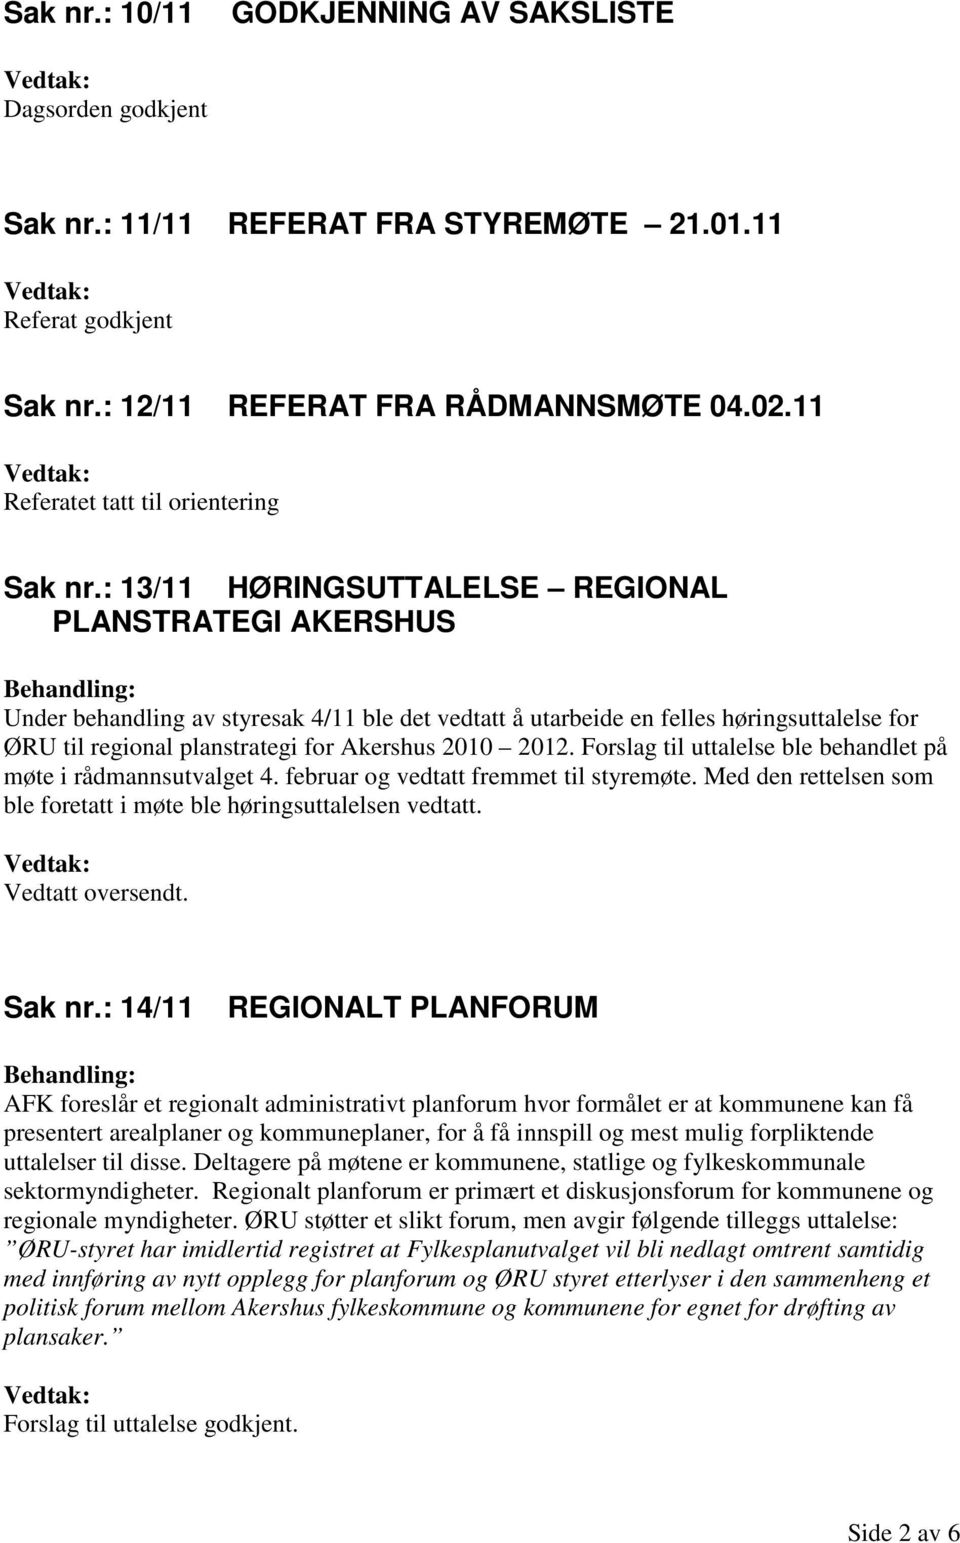 : 13/11 HØRINGSUTTALELSE REGIONAL PLANSTRATEGI AKERSHUS Under behandling av styresak 4/11 ble det vedtatt å utarbeide en felles høringsuttalelse for ØRU til regional planstrategi for Akershus 2010